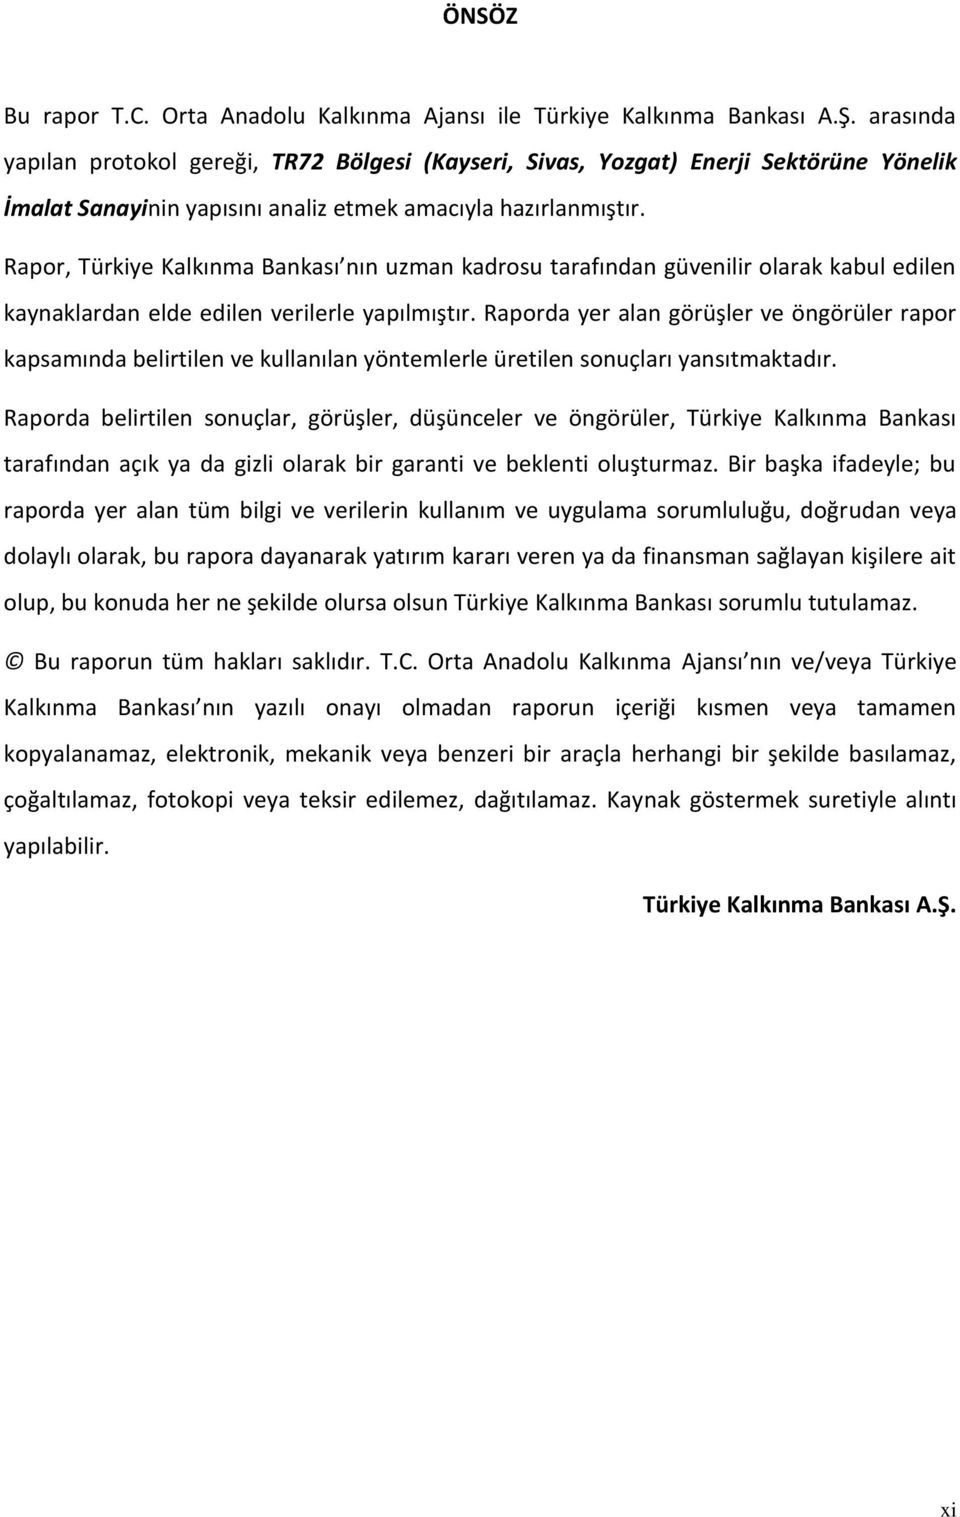 Rapor, Türkiye Kalkınma Bankası nın uzman kadrosu tarafından güvenilir olarak kabul edilen kaynaklardan elde edilen verilerle yapılmıştır.